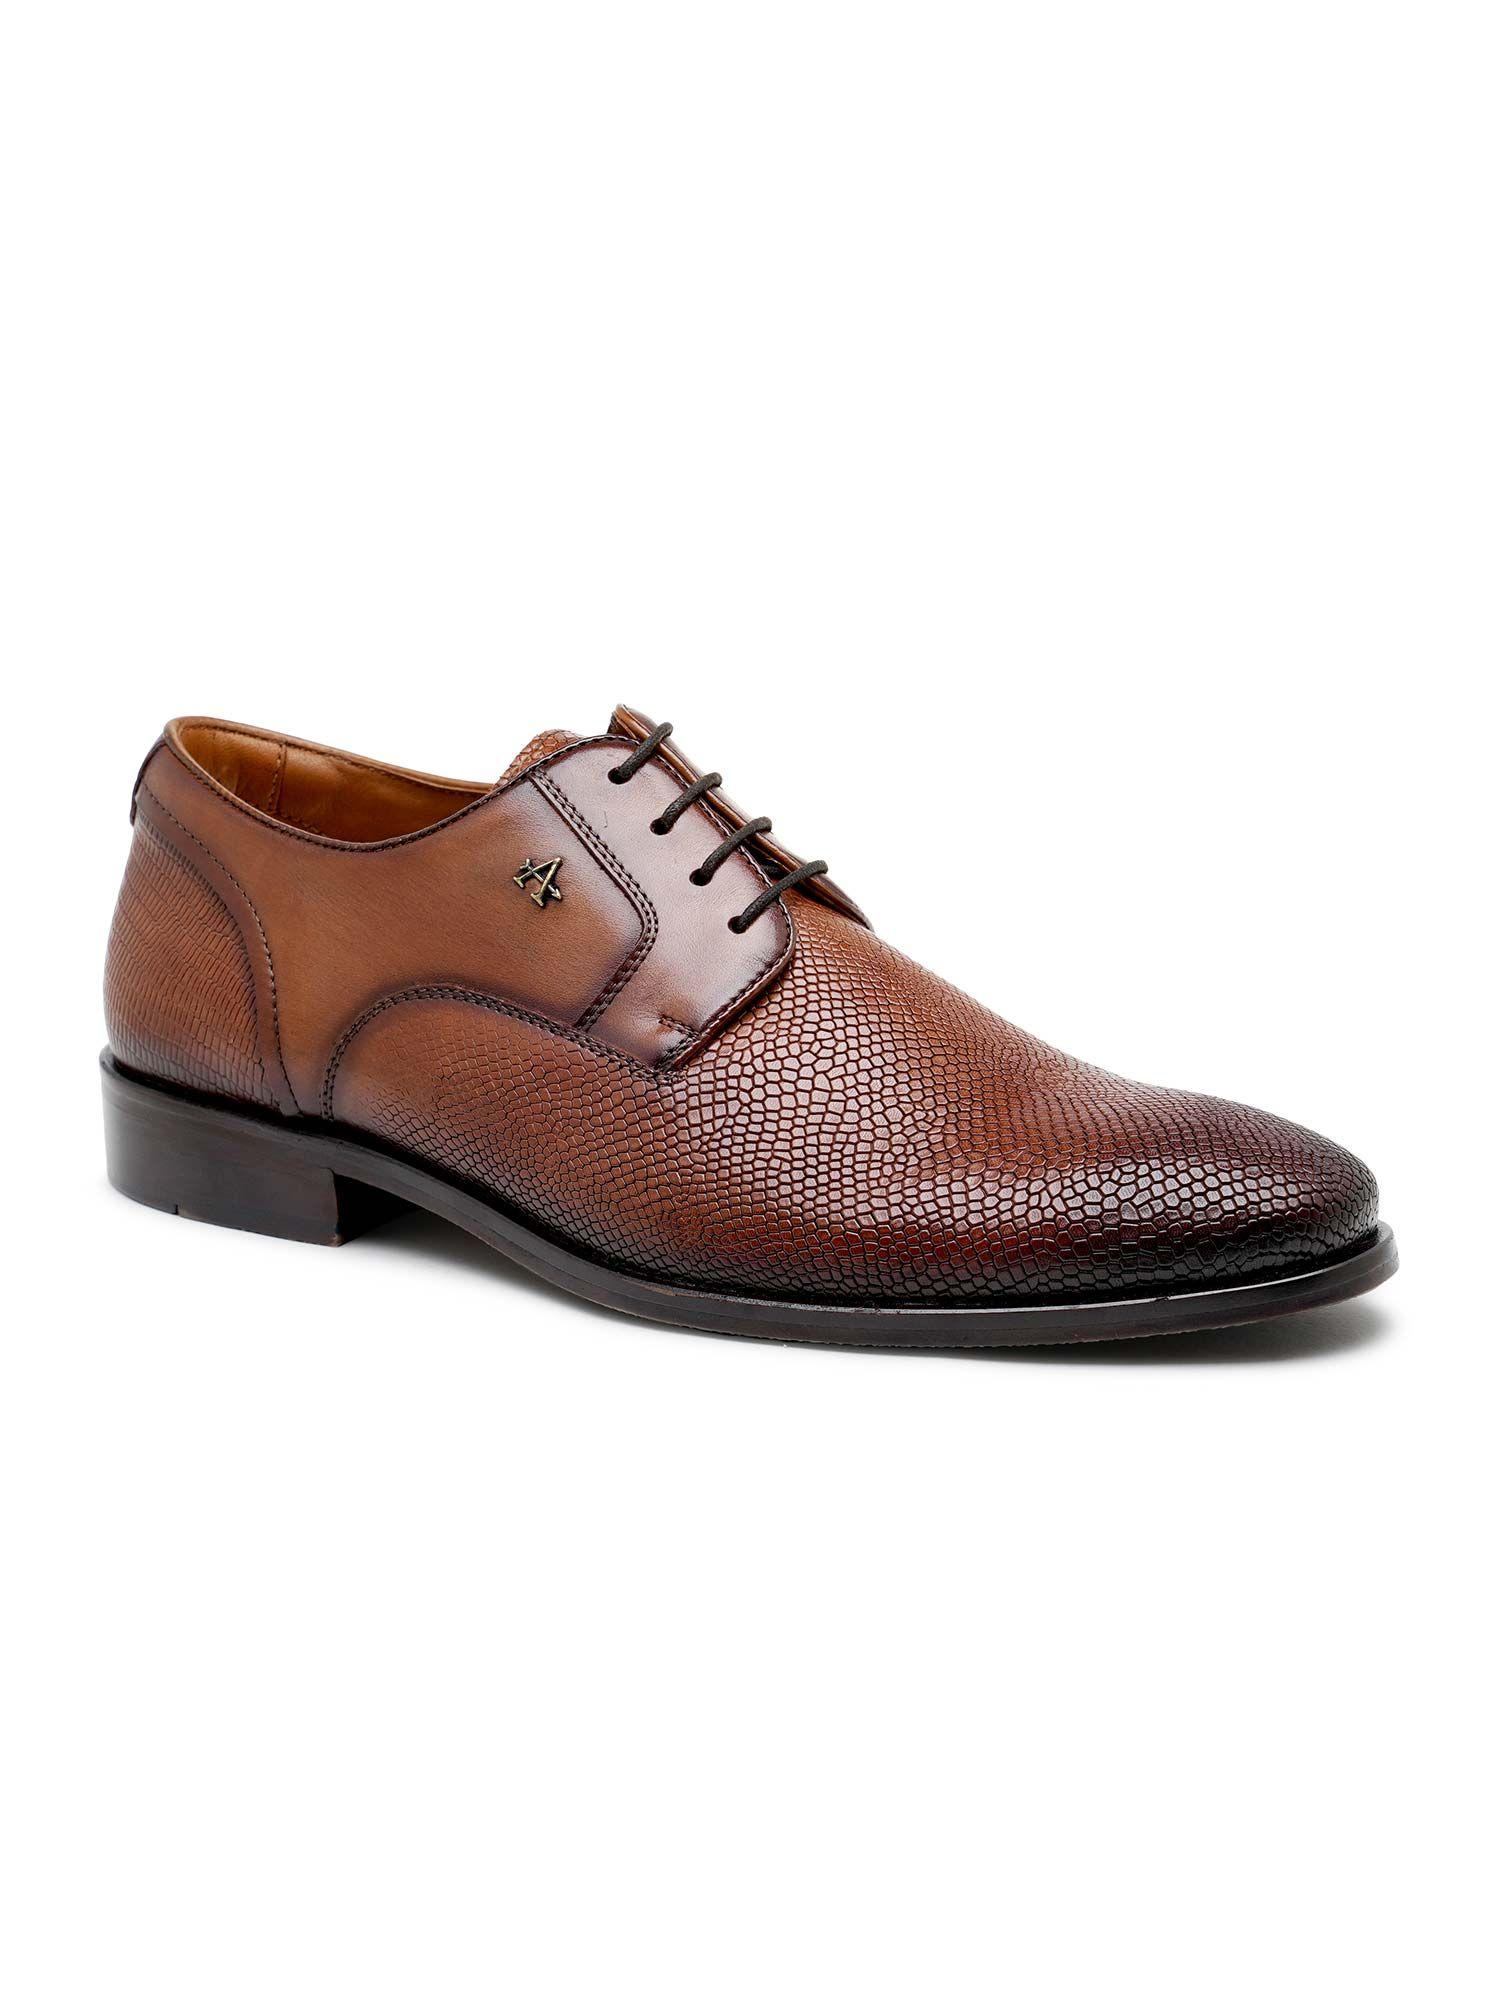 men-crimson-tan-formal-lace-up-shoes